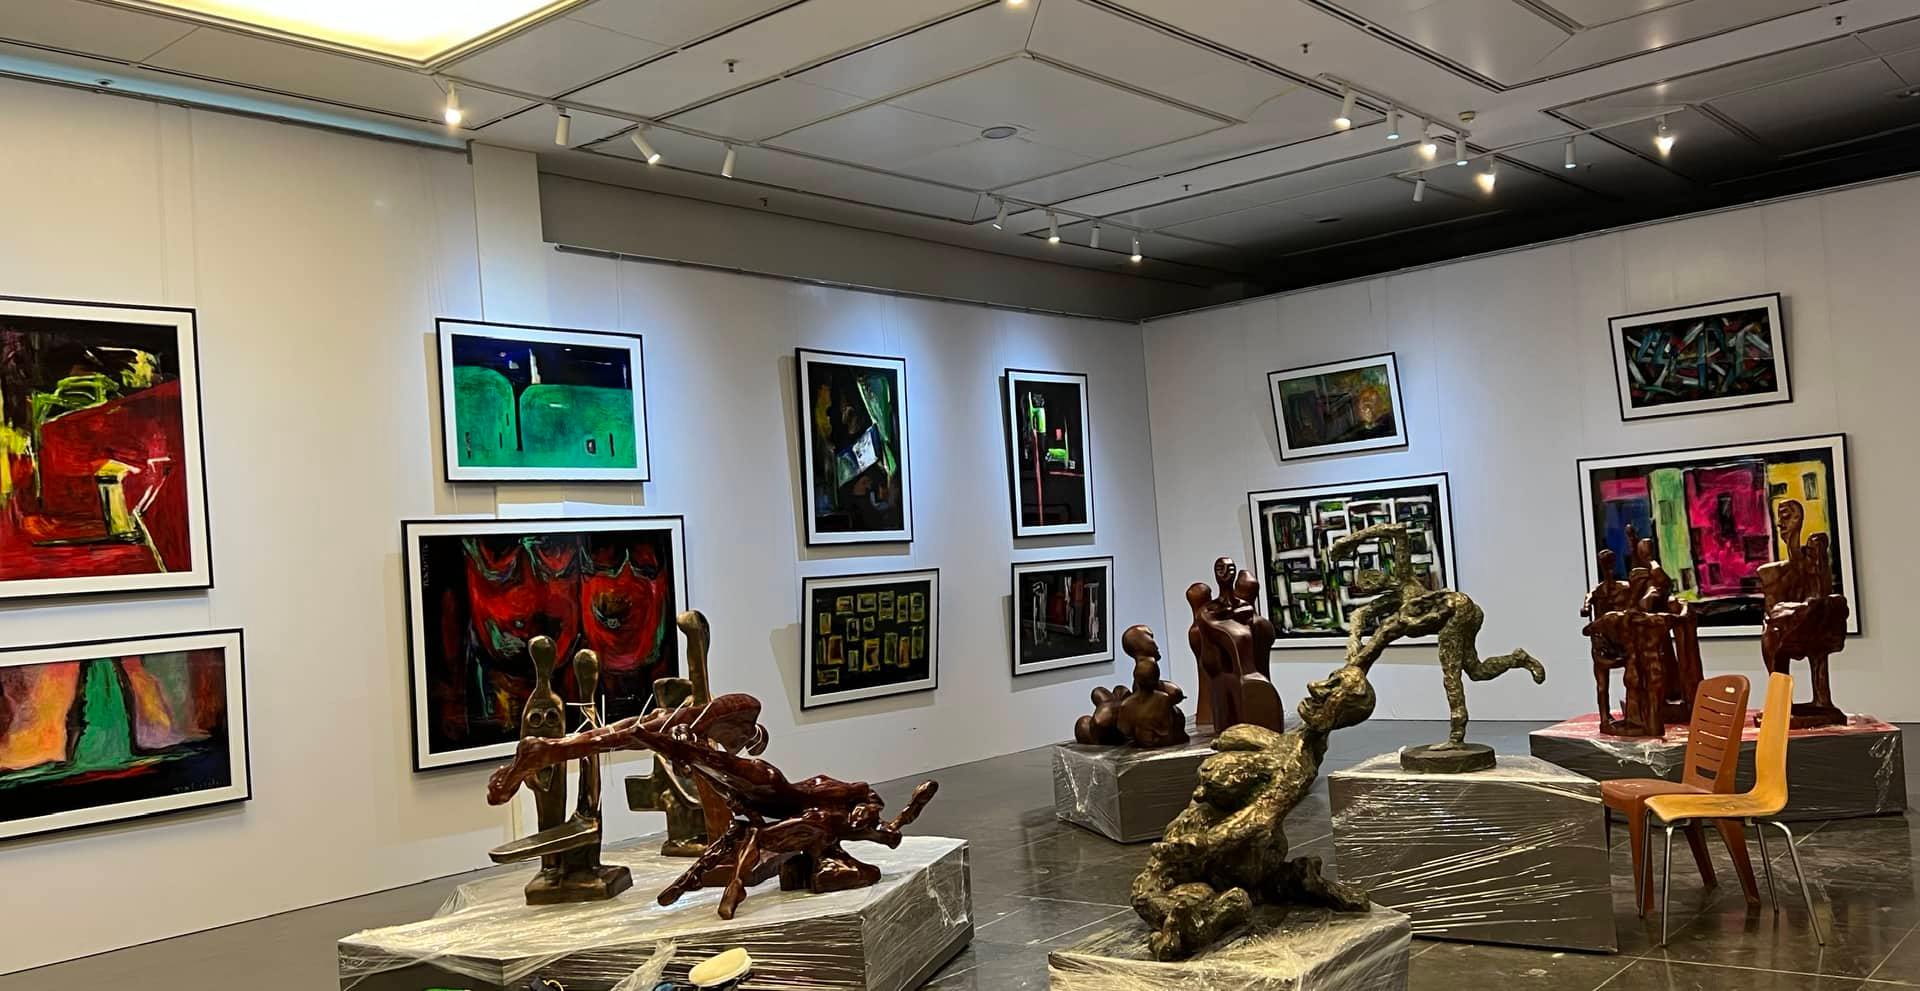 Lần đầu tiên, tác phẩm điêu khắc nặng hơn 4,5 tấn được trưng bày tại Bảo tàng Hà Nội - Ảnh 7.